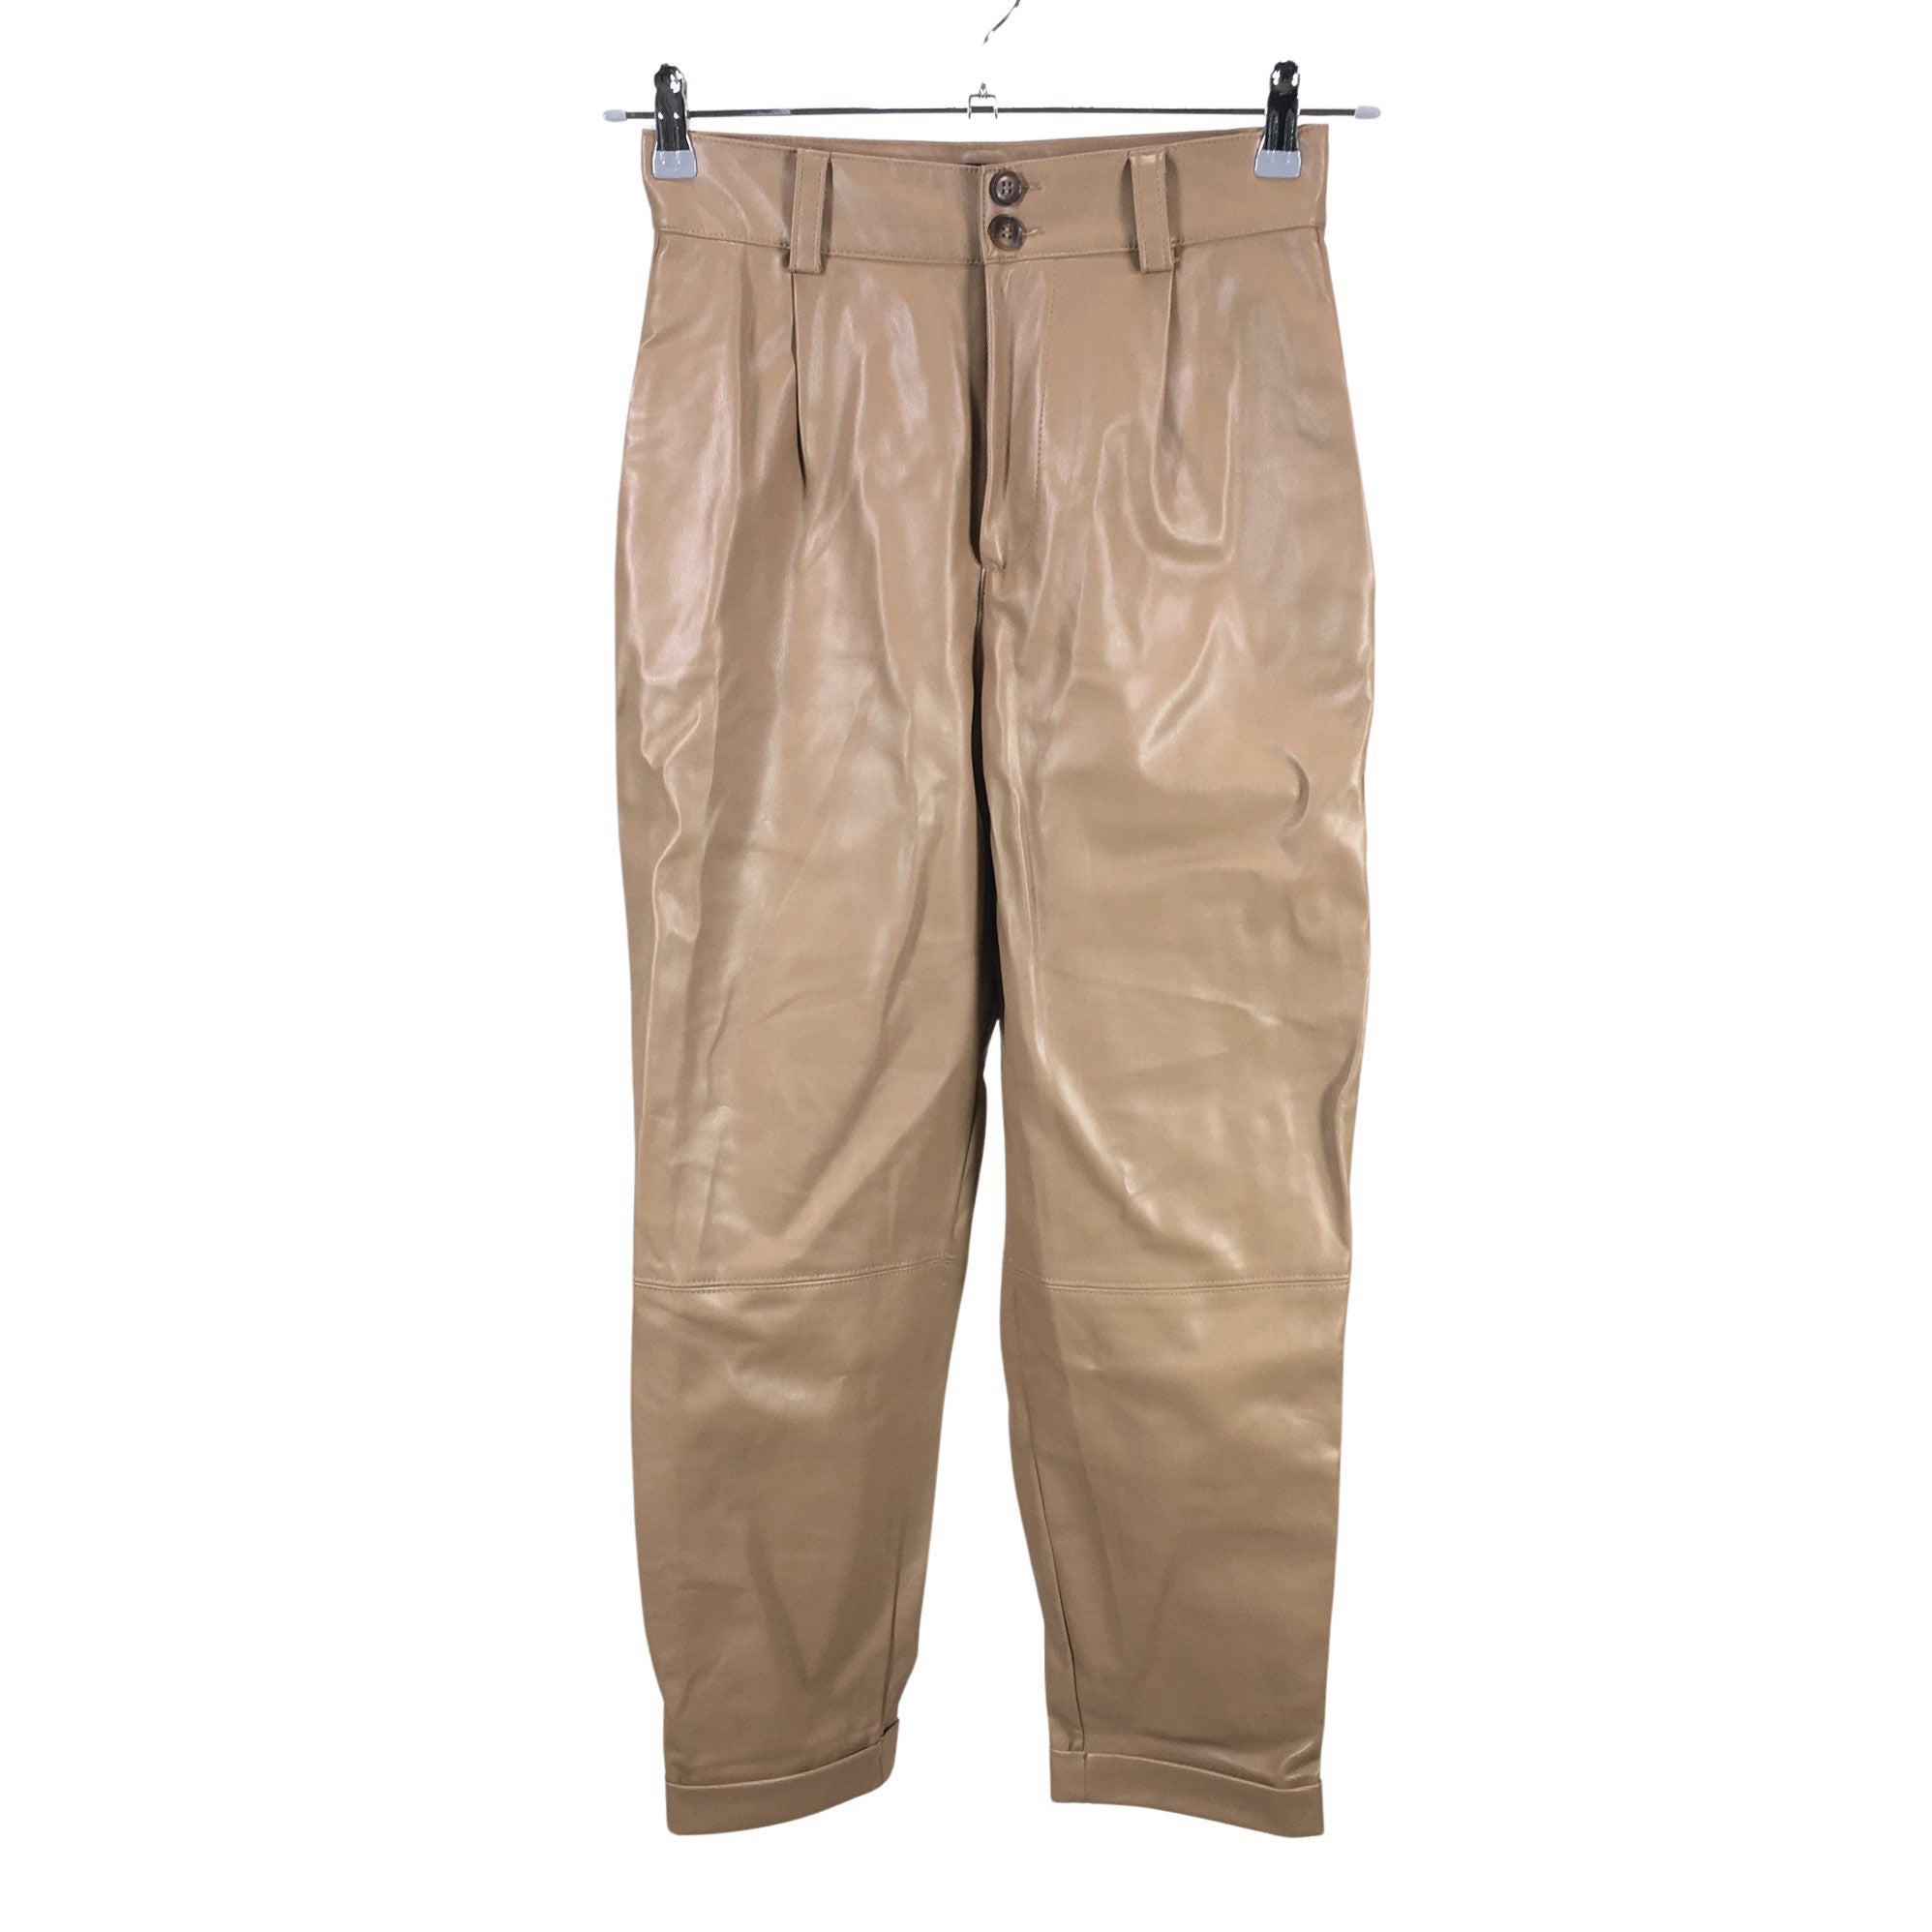 ZARA Denim Leather Pants for Women | Mercari